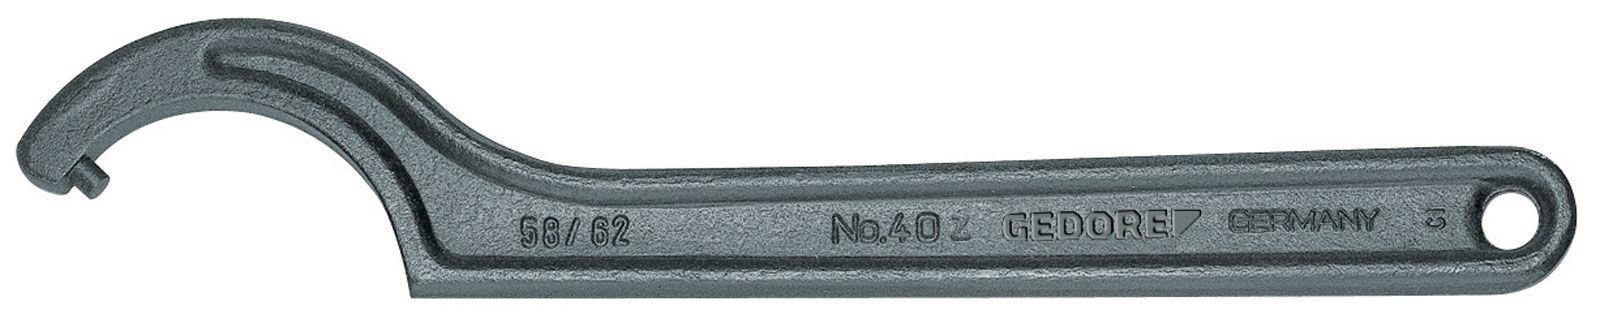 Bild von 40 Z 205-220 Hakenschlüssel, DIN 1810 Form B, 205-220 mm